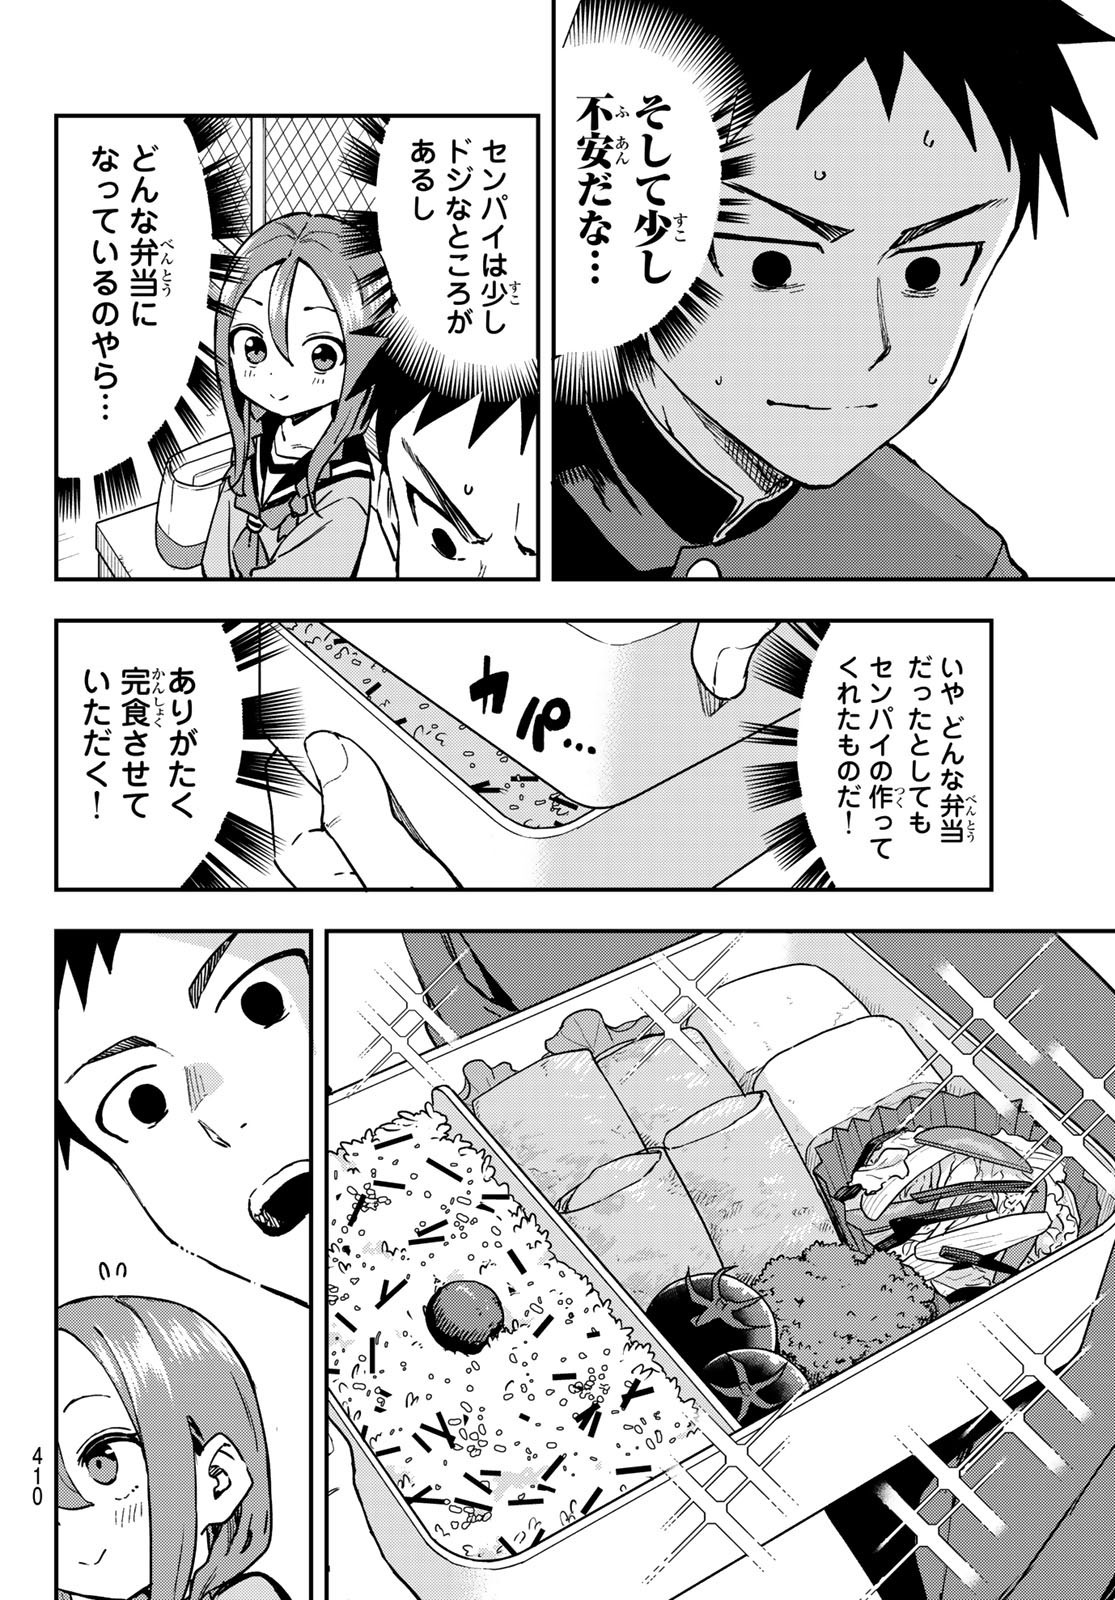 Soredemo Ayumu wa Yosetekuru - Chapter 216 - Page 2